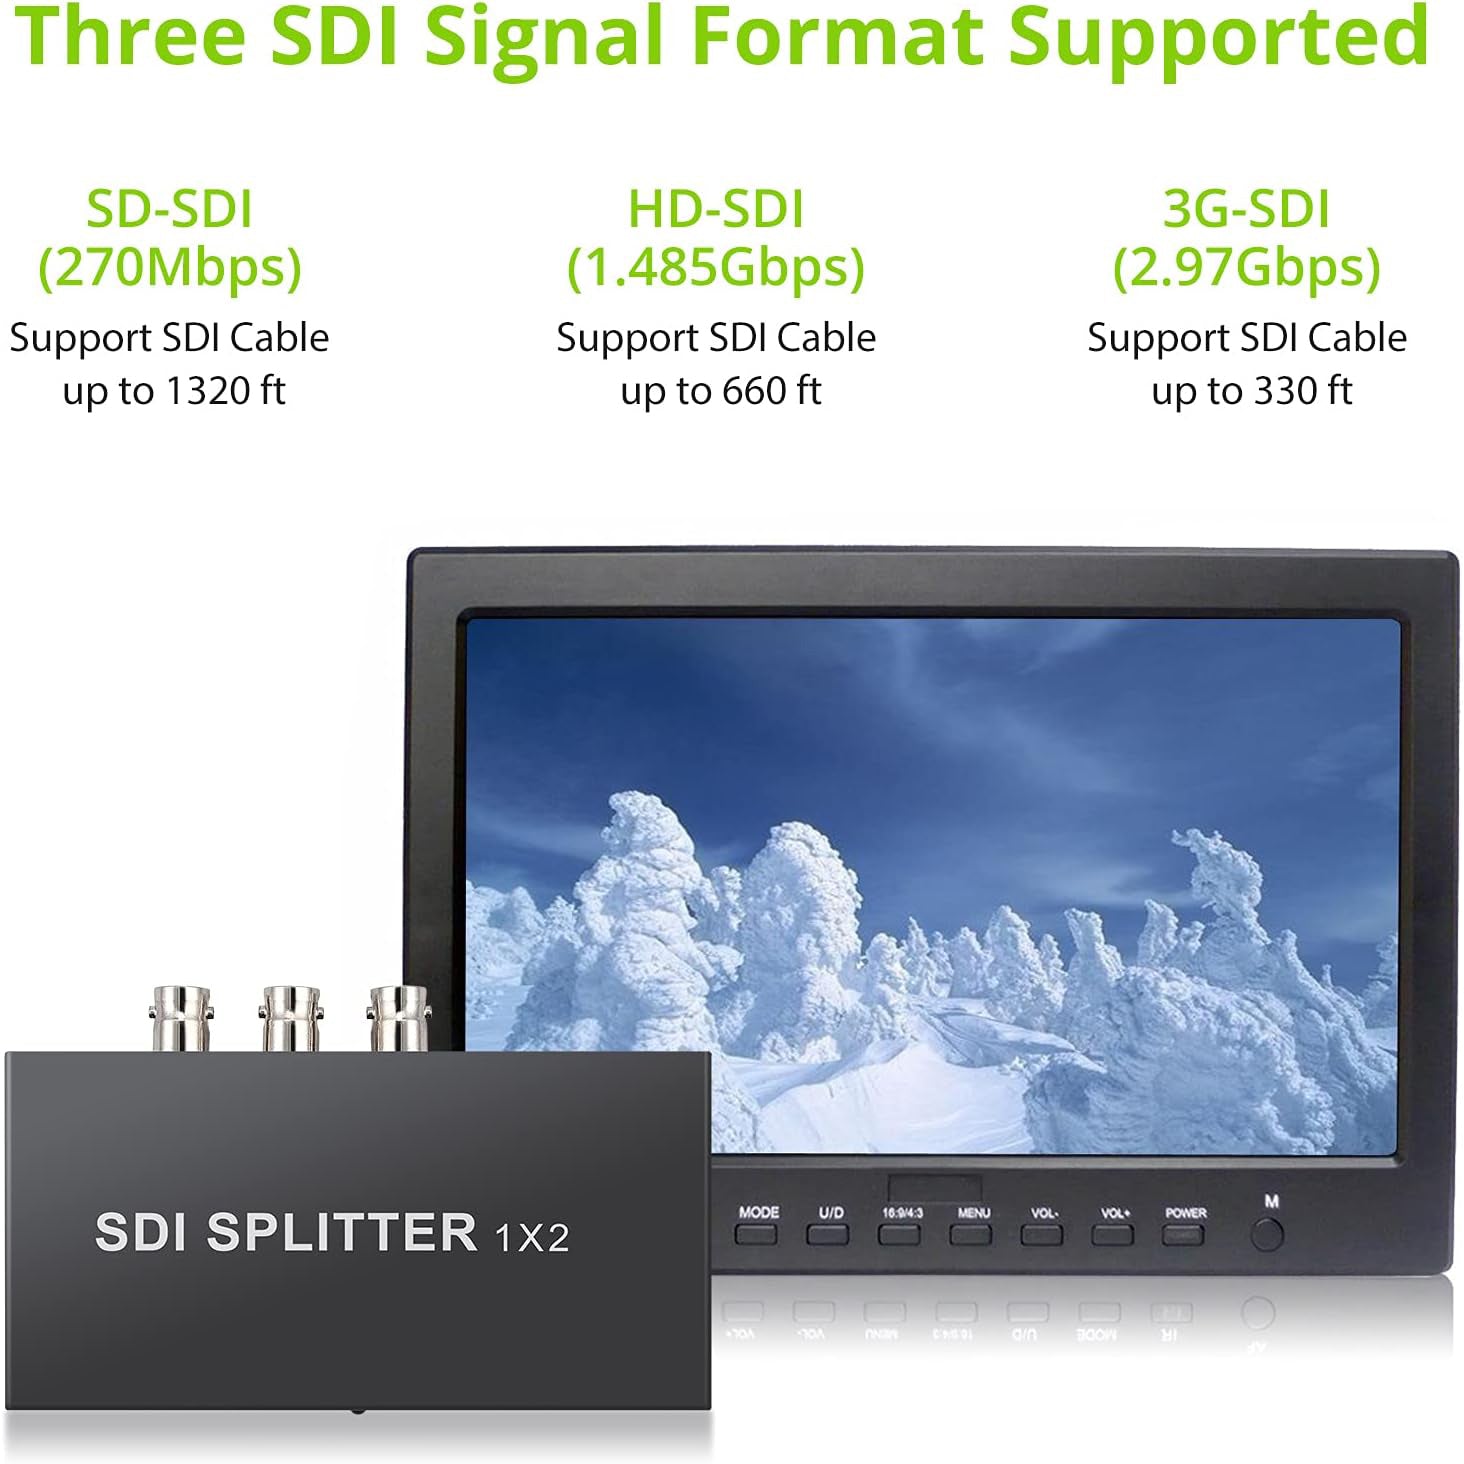 LiNKFOR SDI Splitter 1x2 2 Port Splitter 1080p 1 x IN 2 x Out